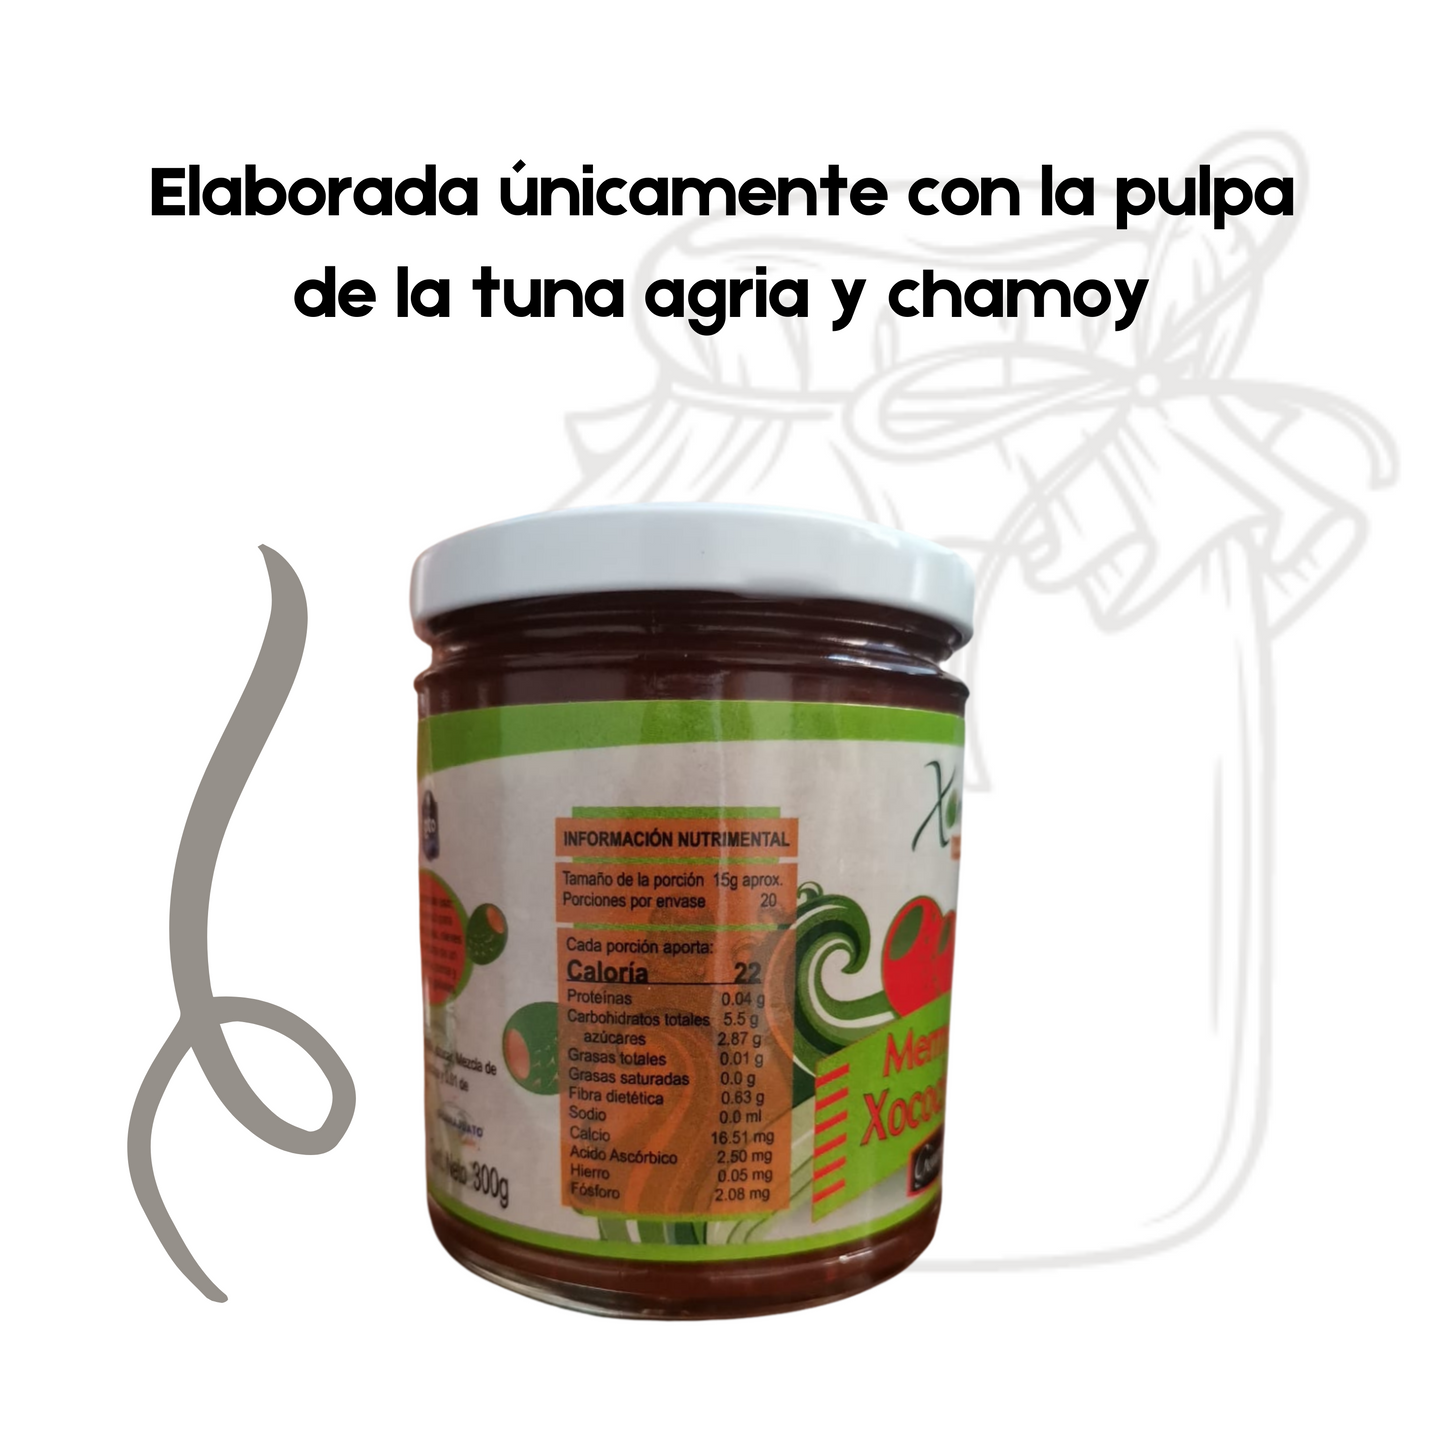 Mermelada de Xocochamoy | Xoconostle y Chamoy | 100% natural | 12 frascos | Mexpofood